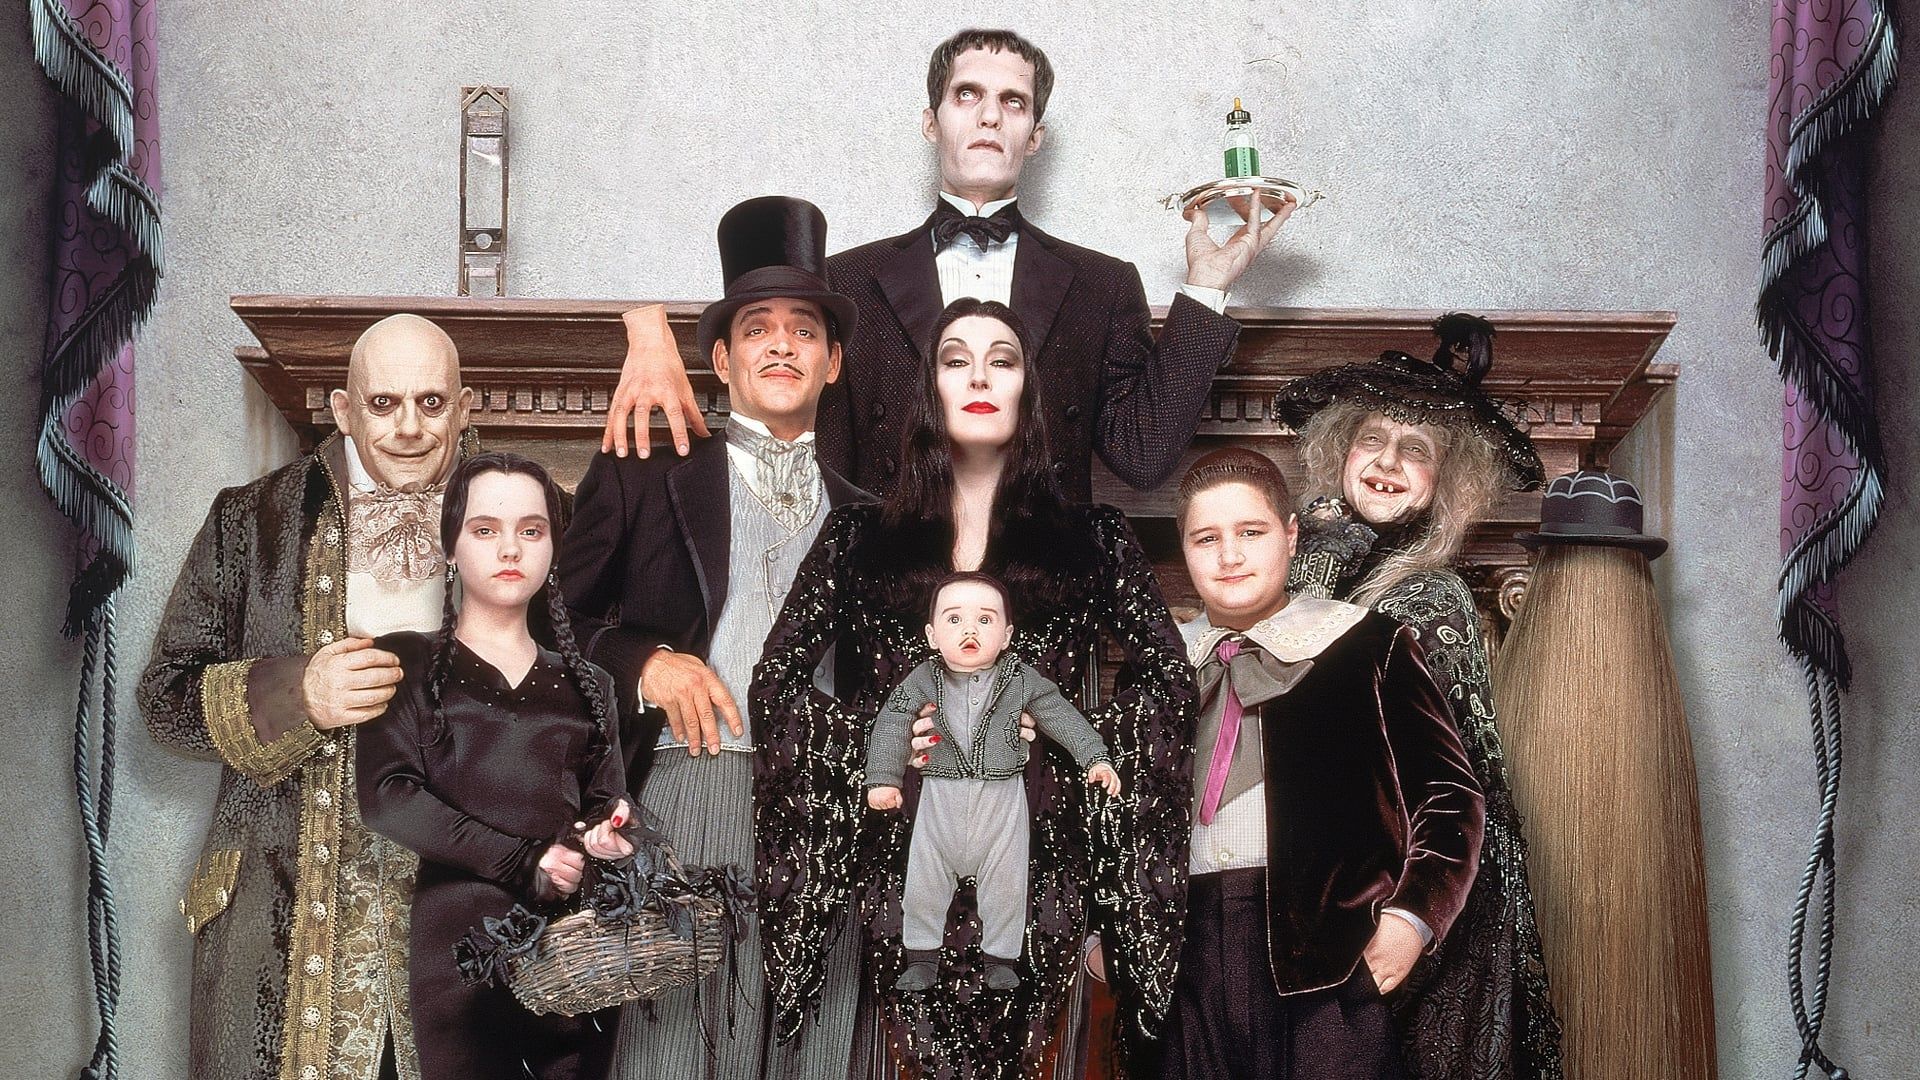 Addams Family Values Backdrop